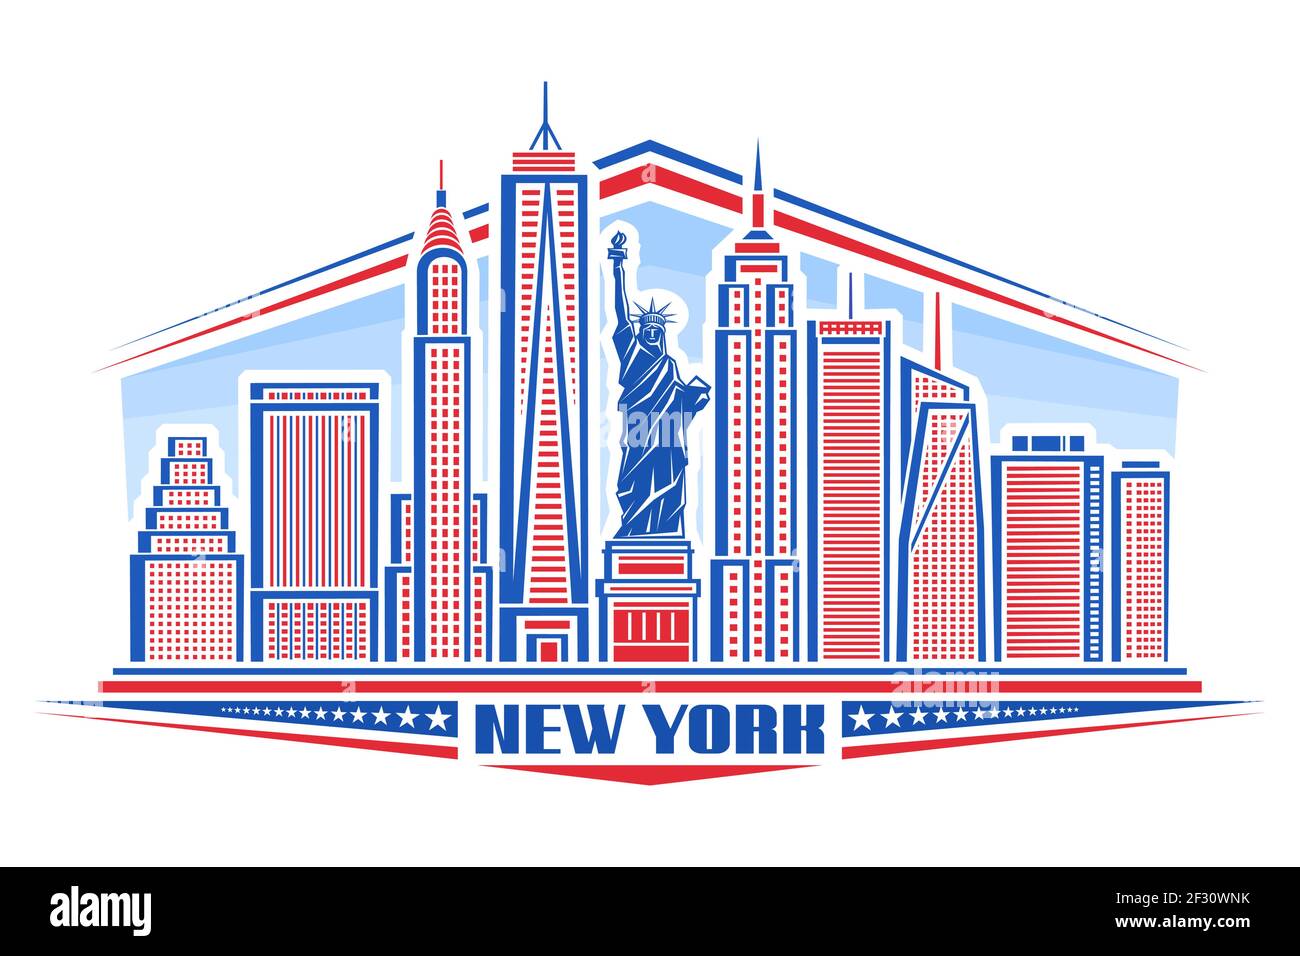 Illustration vectorielle de la ville de New York, affiche bleue et rouge avec le symbole de NYC - Statue de la liberté et esquisse de paysage urbain moderne, design d'art, conce urbaine Illustration de Vecteur